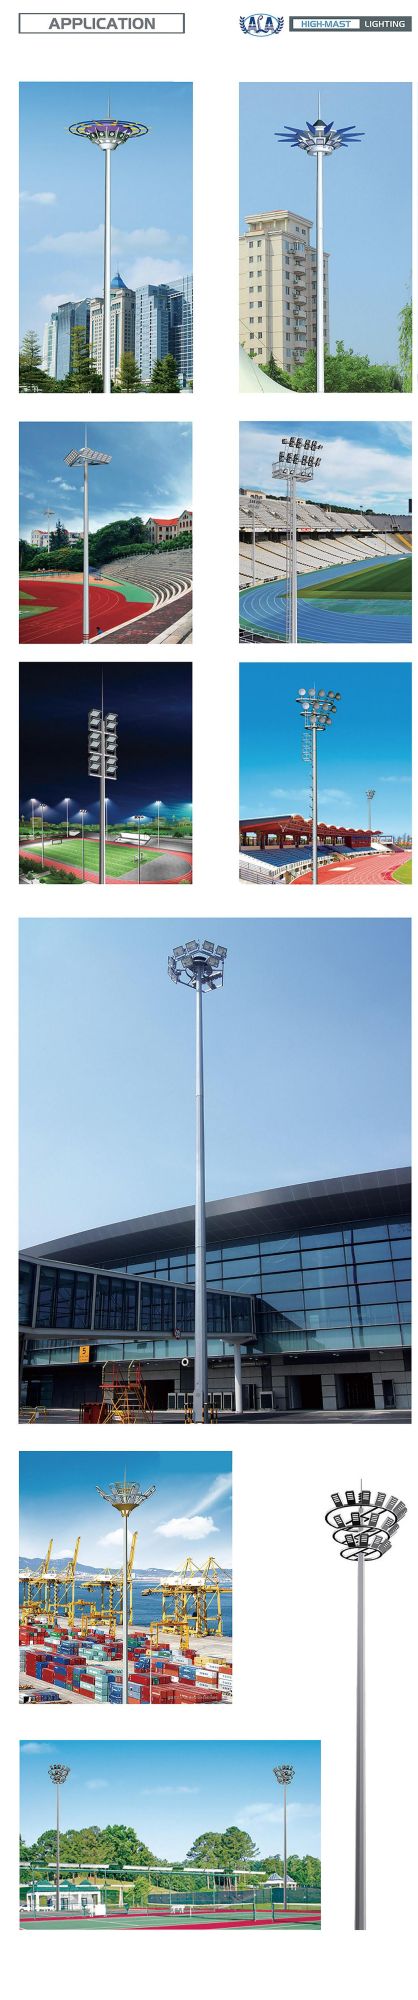 Ala 1200W Newest Design Tennis Court Soccer Sport Field Stadium Outdoor High Mast Light